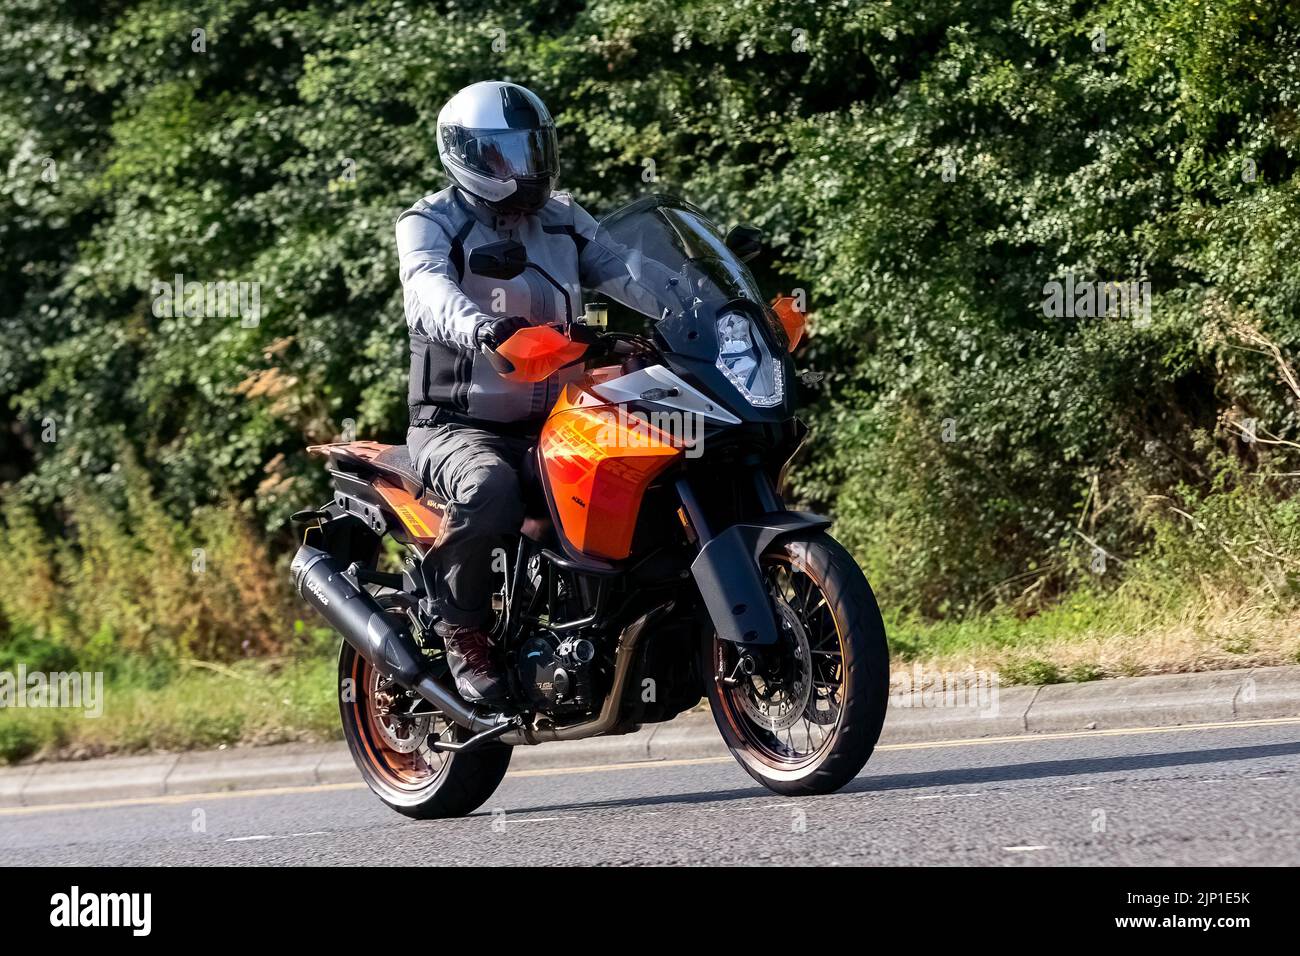 2013 orange KTM 1190 Adventure motorcycle Stock Photo